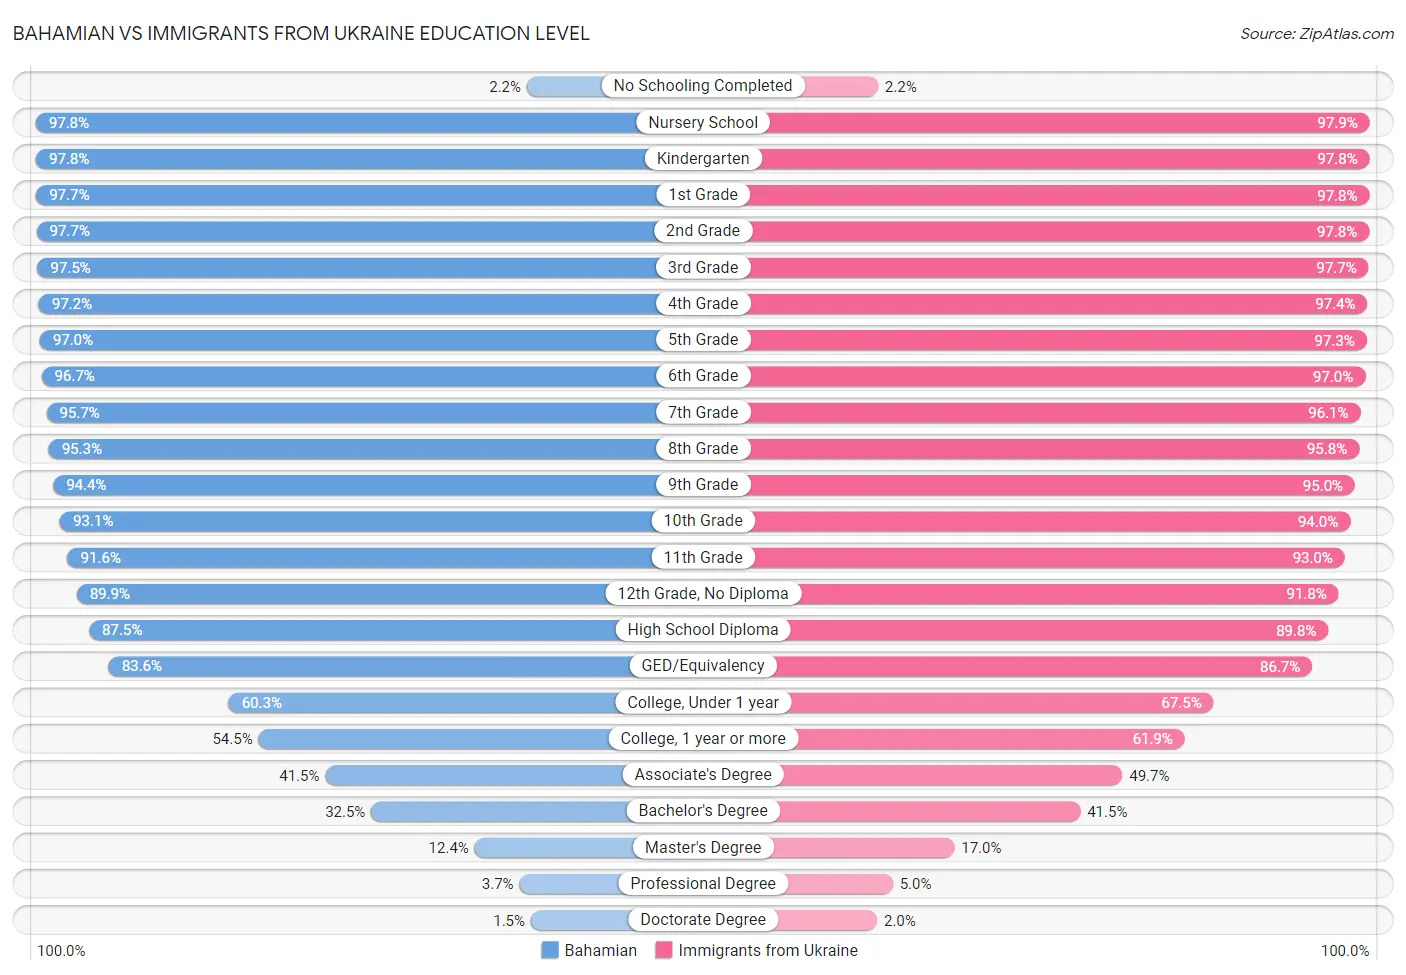 Bahamian vs Immigrants from Ukraine Education Level